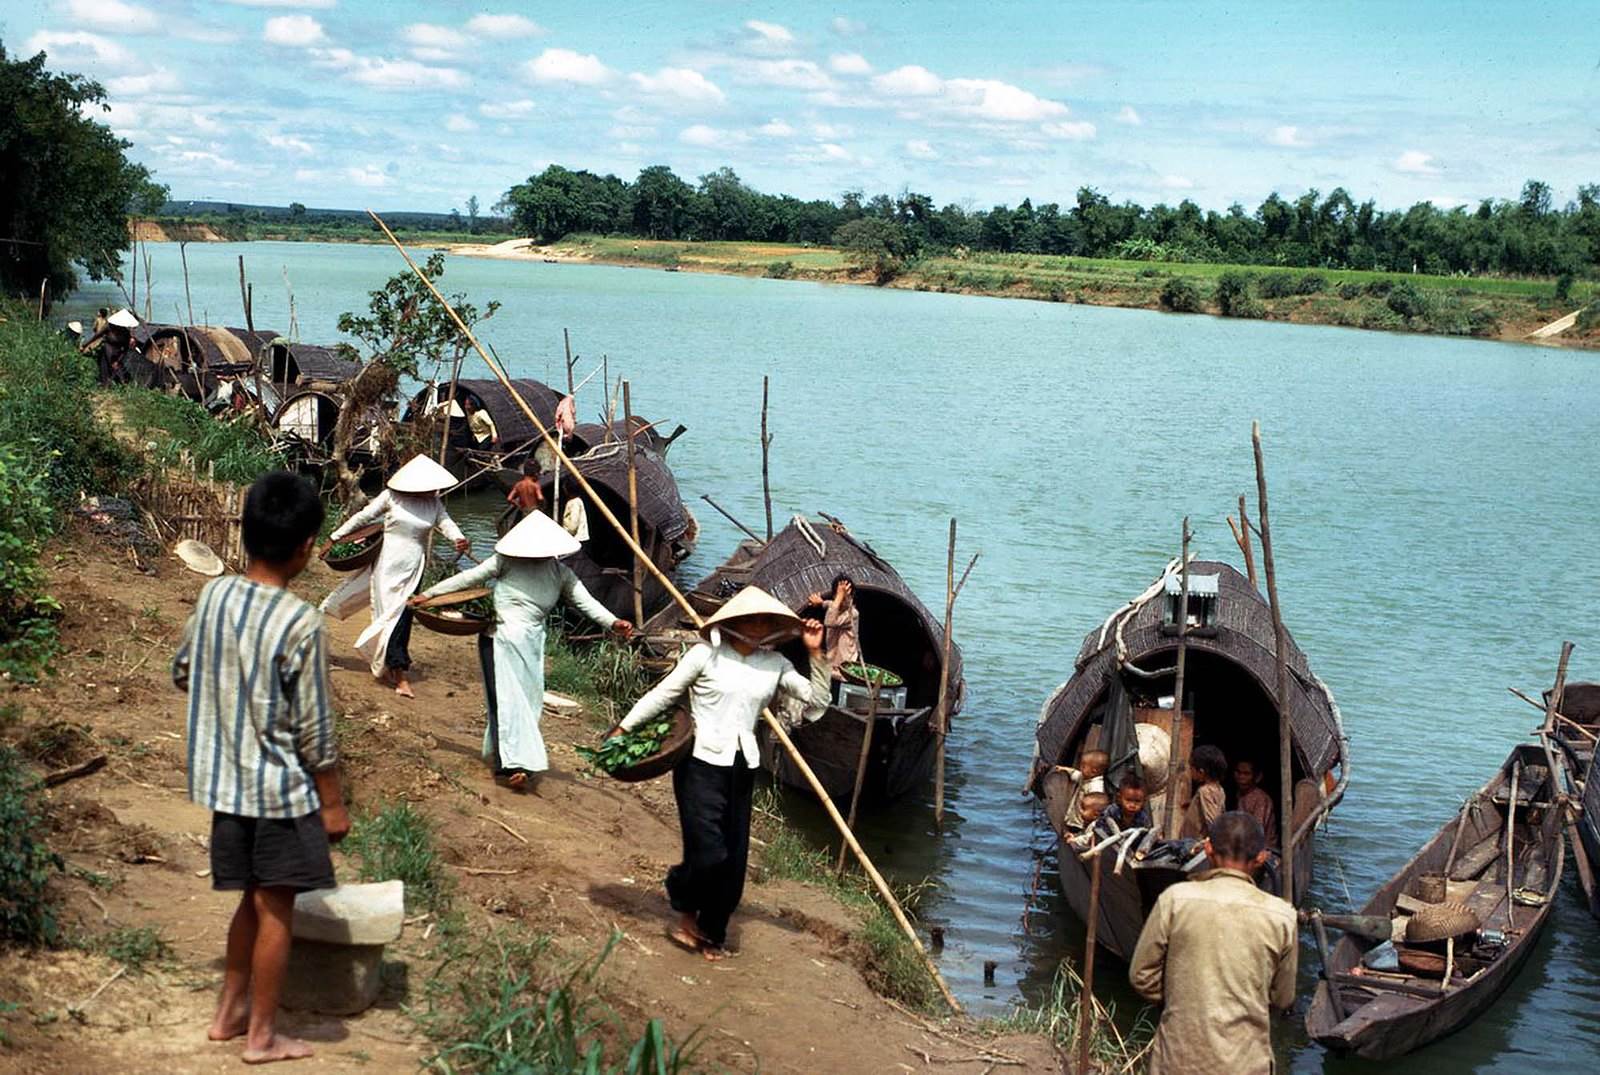 Bến đò dọc bờ sông Cam Lộ. Quang Tri 1967 - Photo by Edward Palm